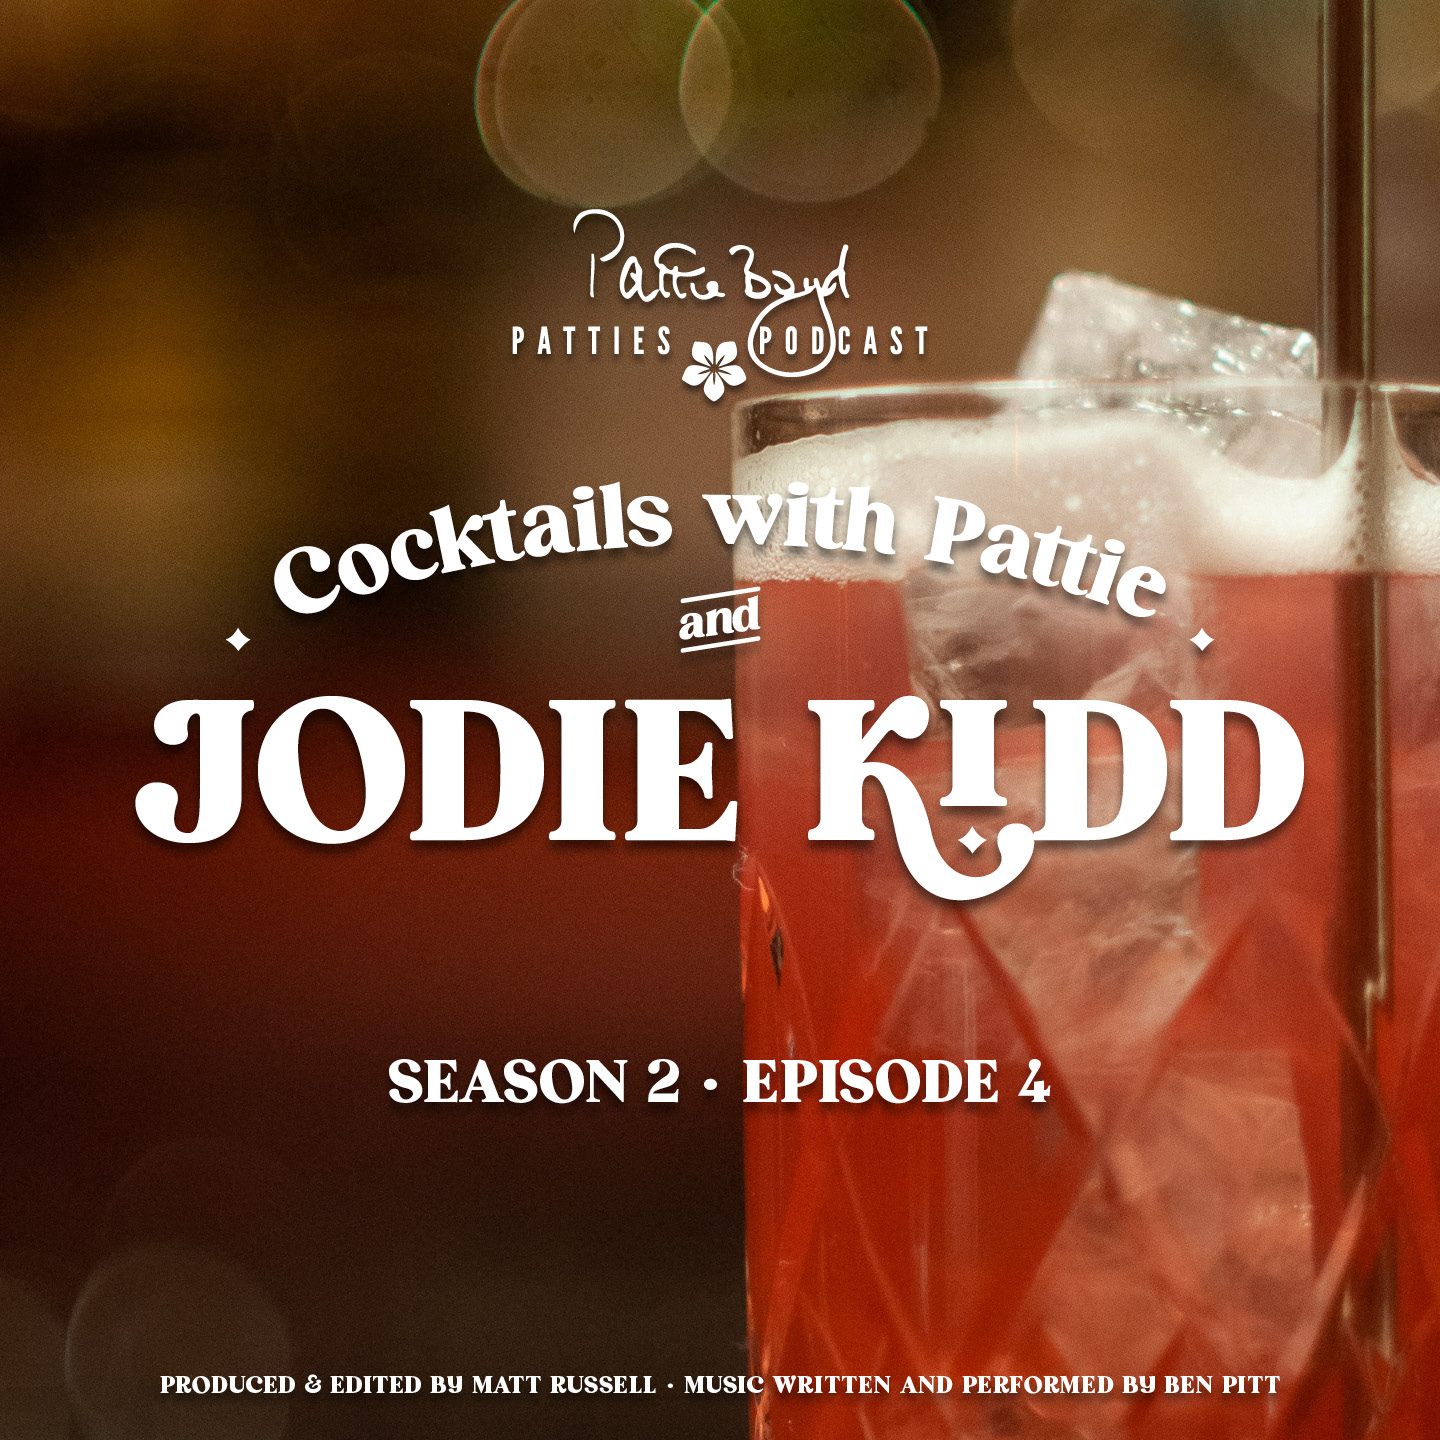 Jodie Kidd